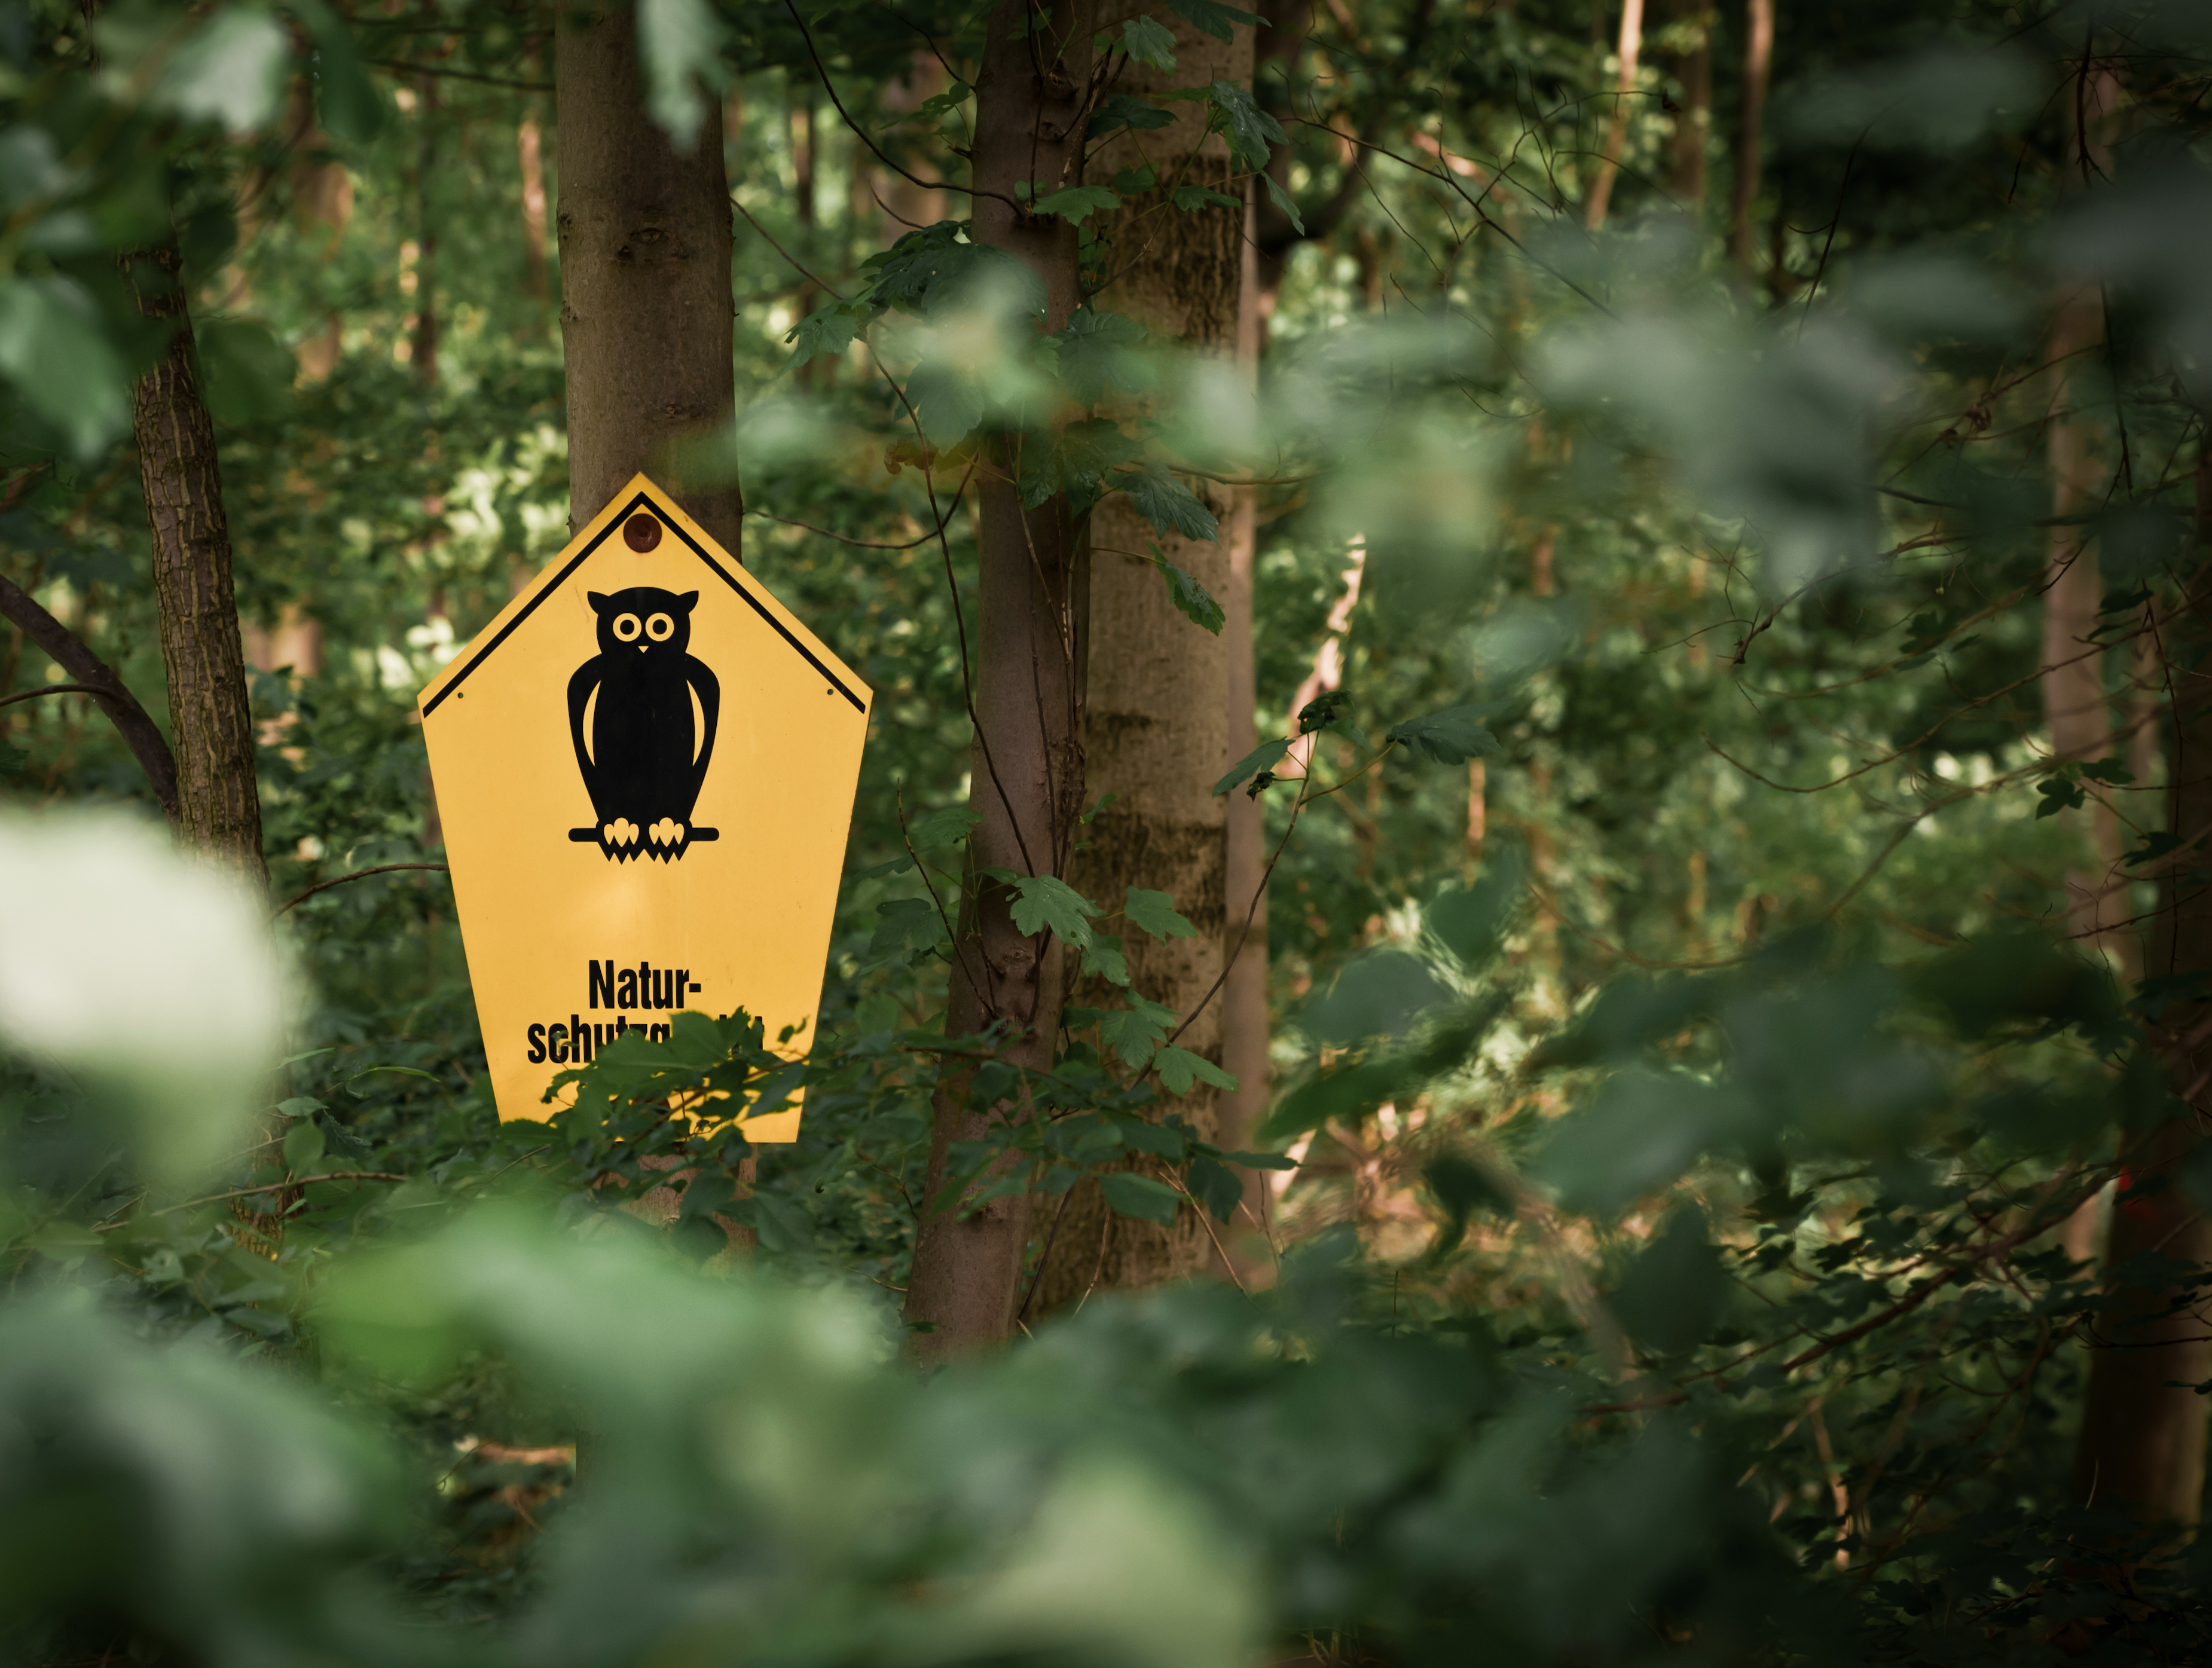 Naturschutzgebiet-Schild in einem Wald